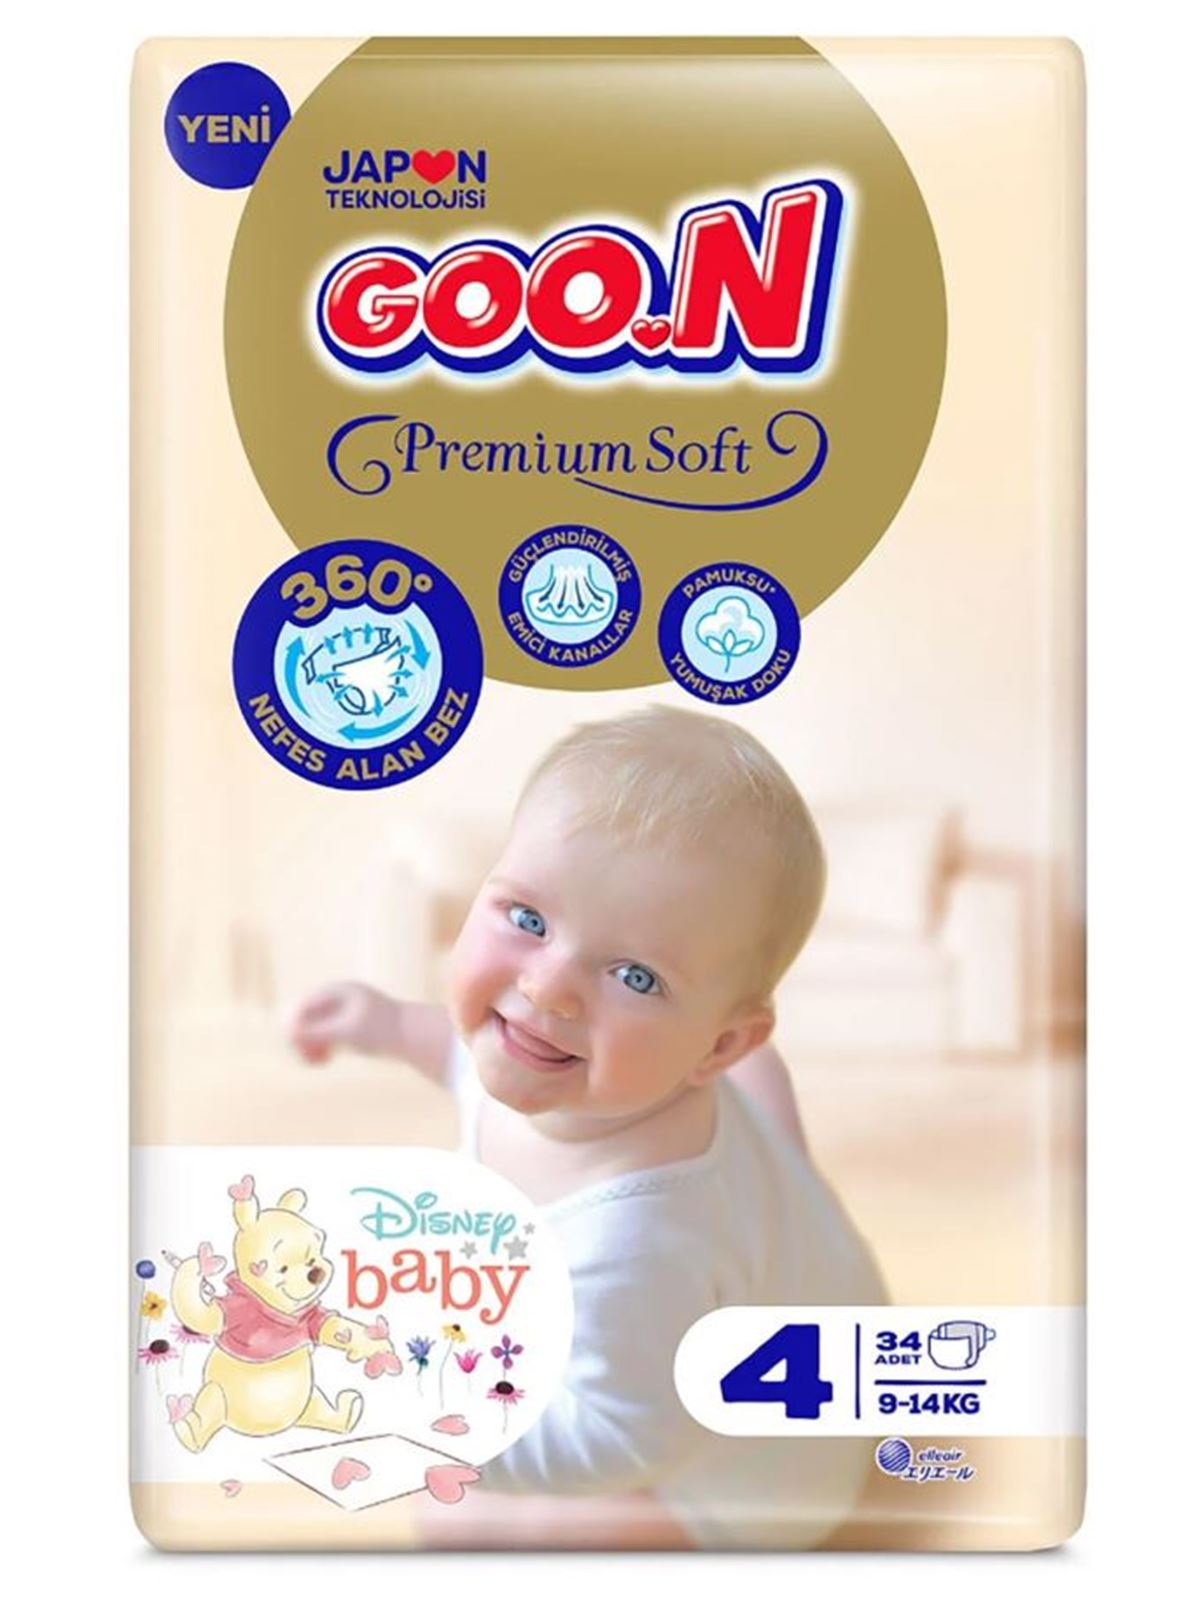 Goon Bebek Bezi Premium Soft 4 Beden Jumbo Paket 34 Adet 9-14 kg